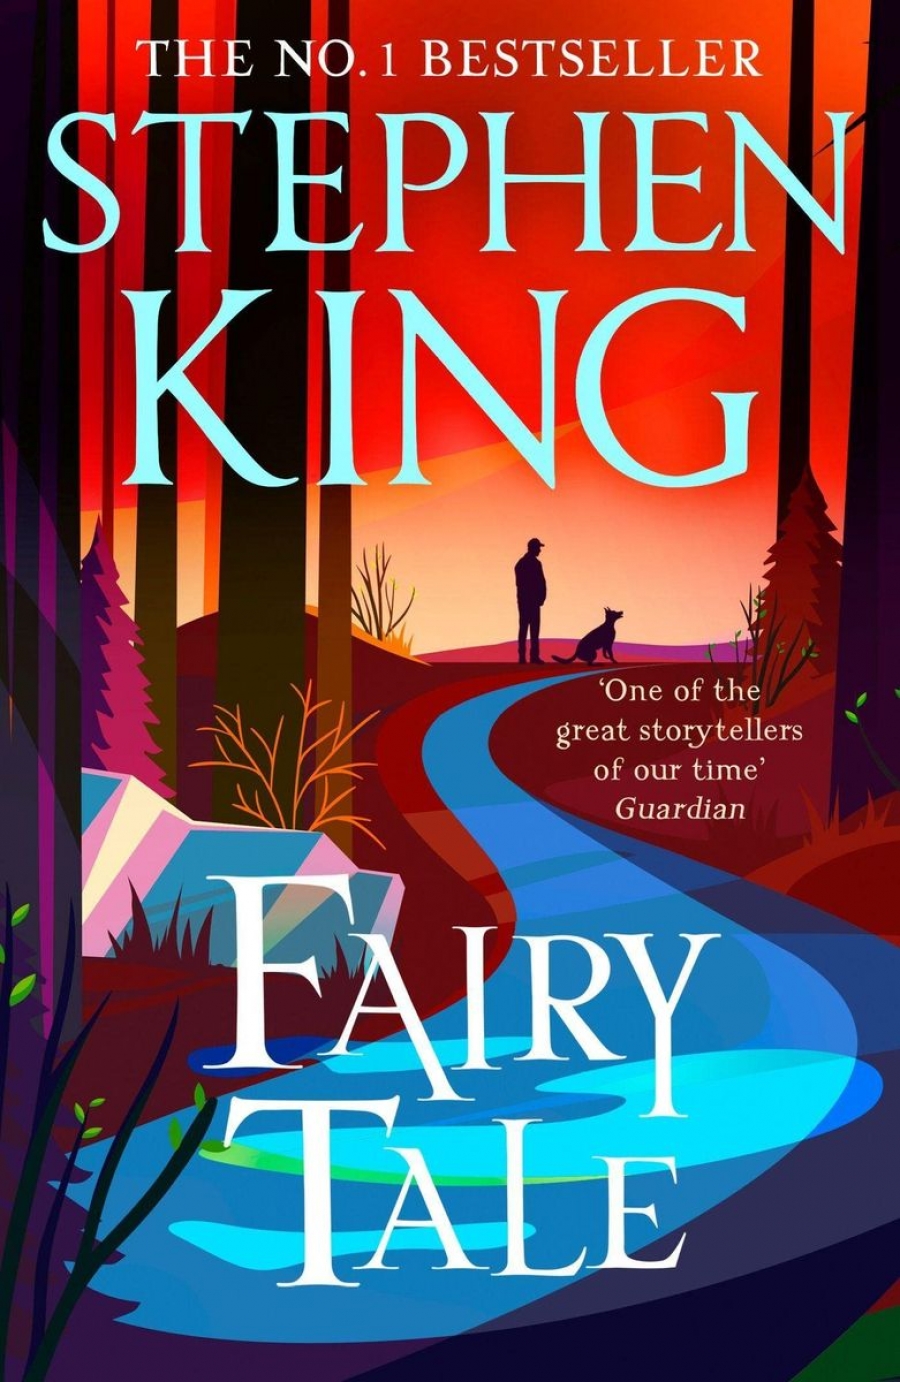 King Stephen Fairy tale 